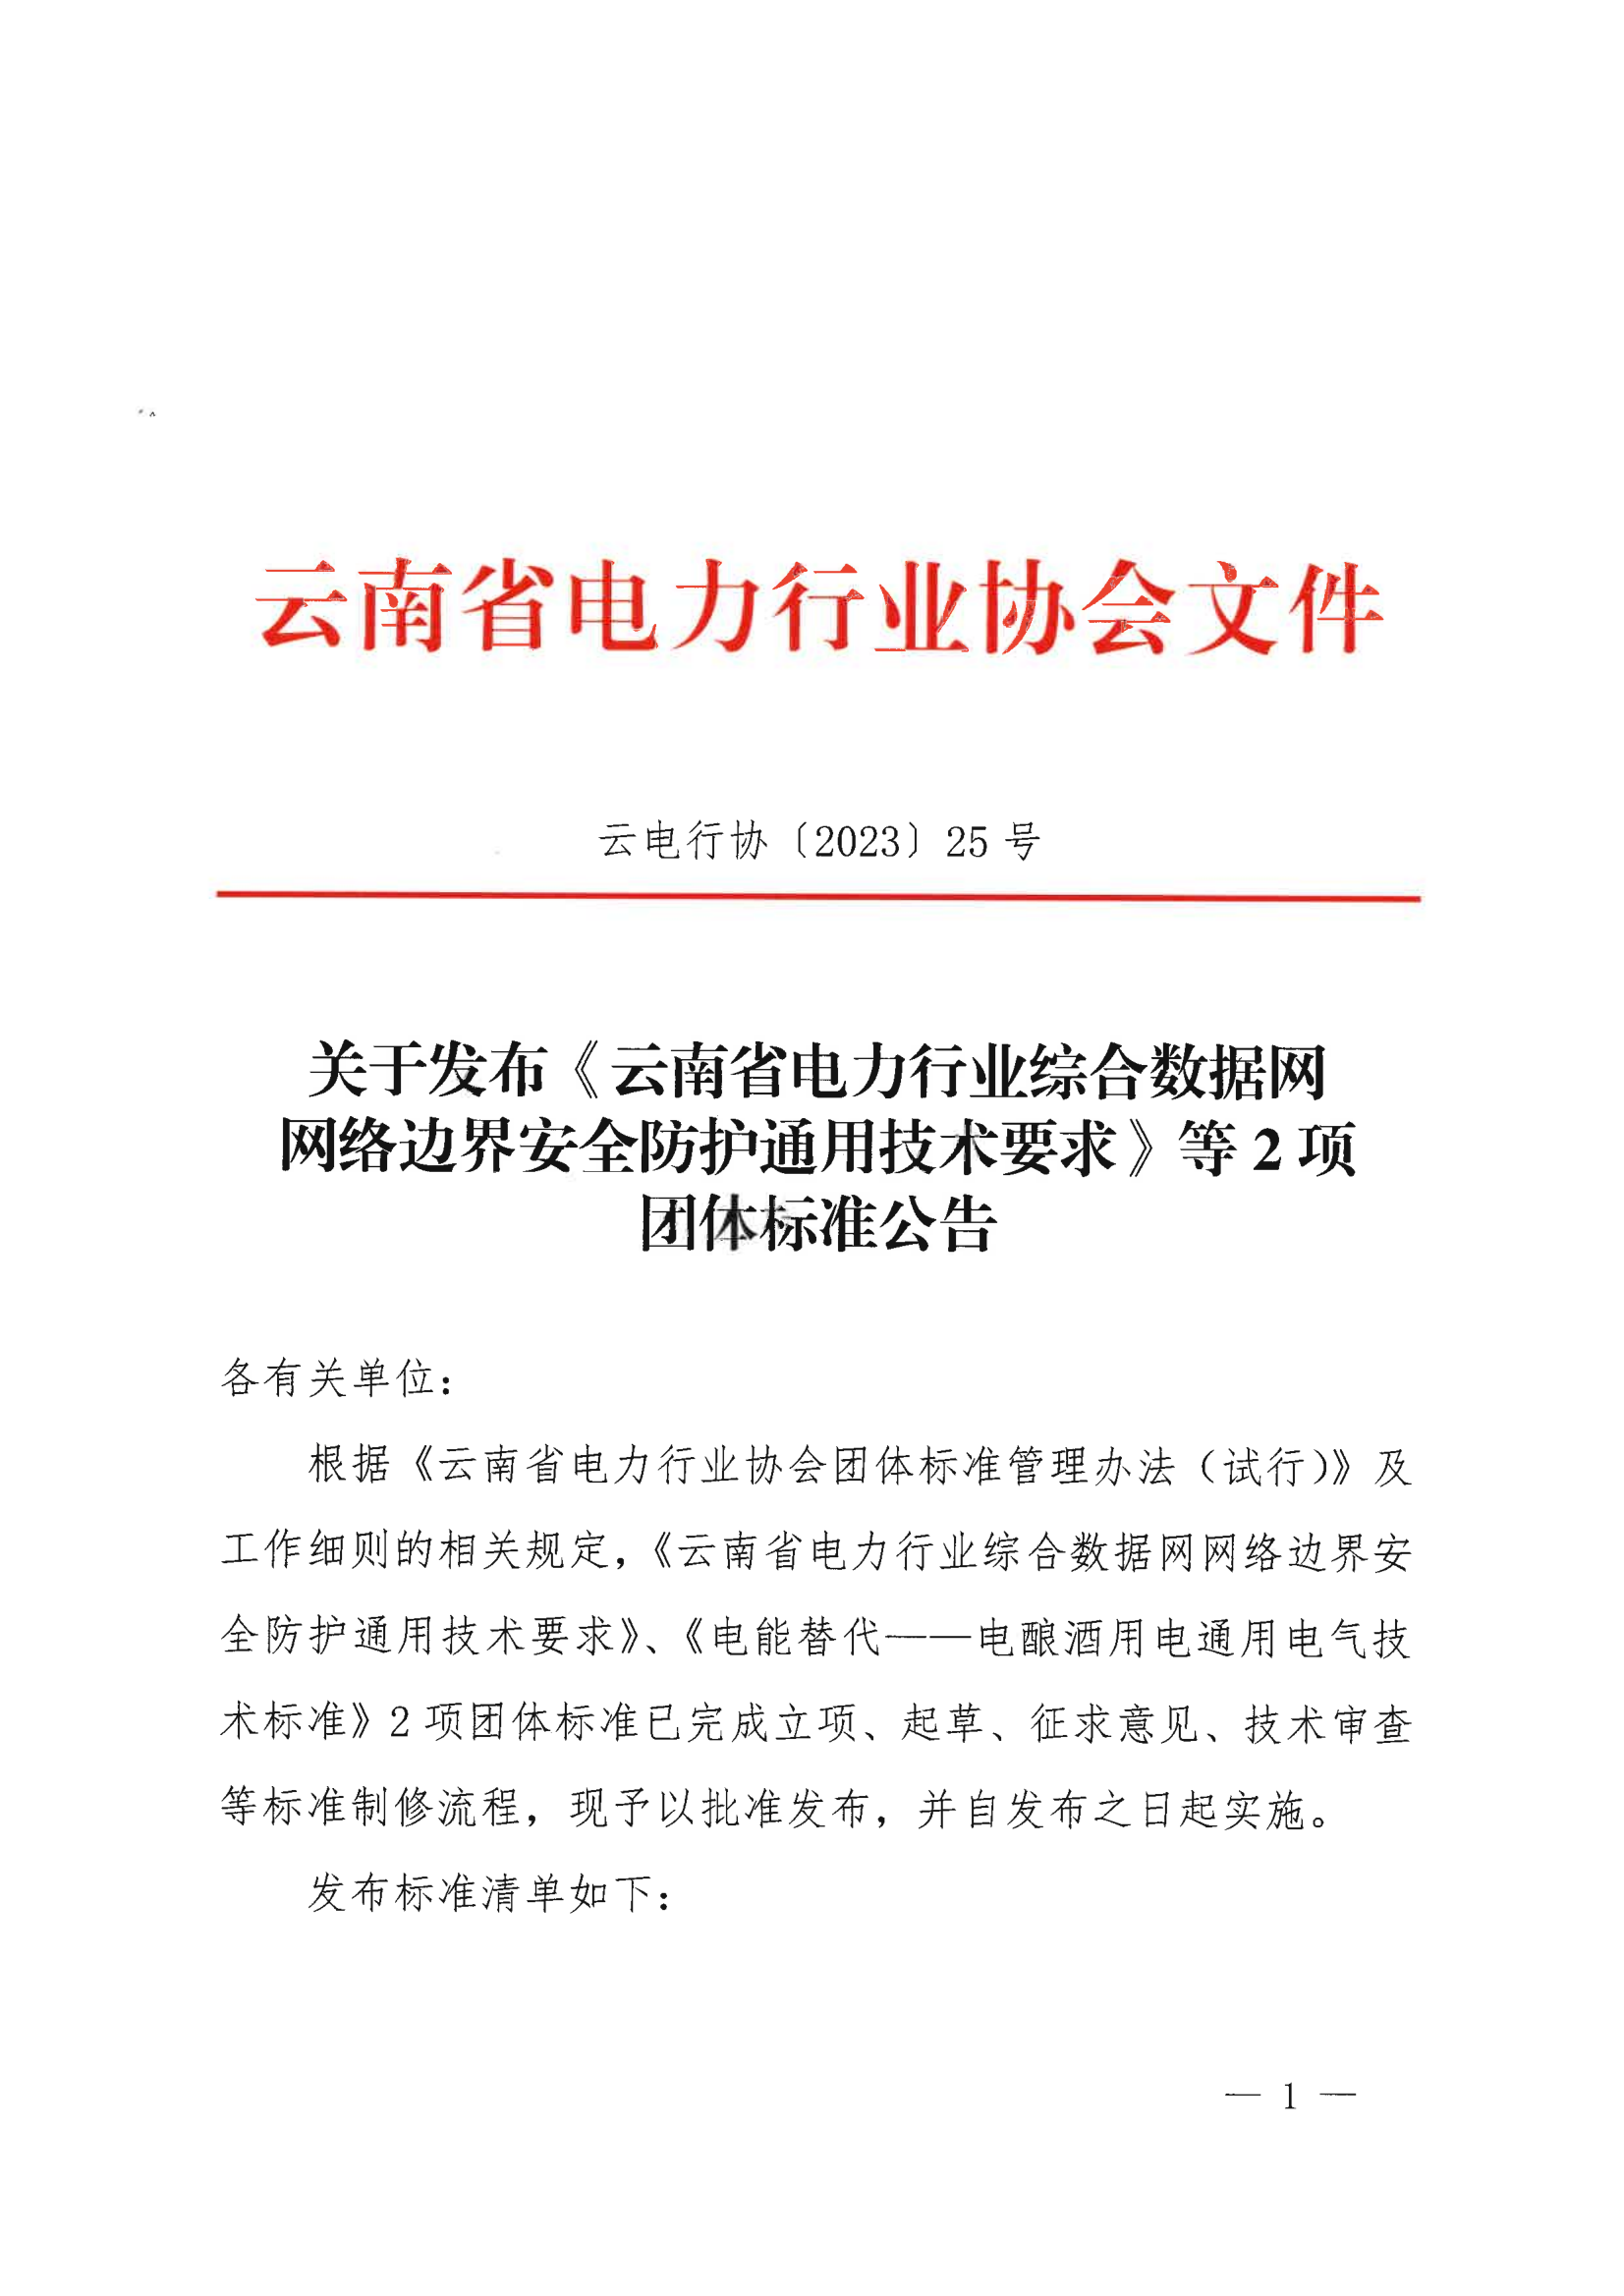 关于发布《云南省电力行业综合数据网网络边界安全防护通用技术要求》等2项团体标准公告_1.png